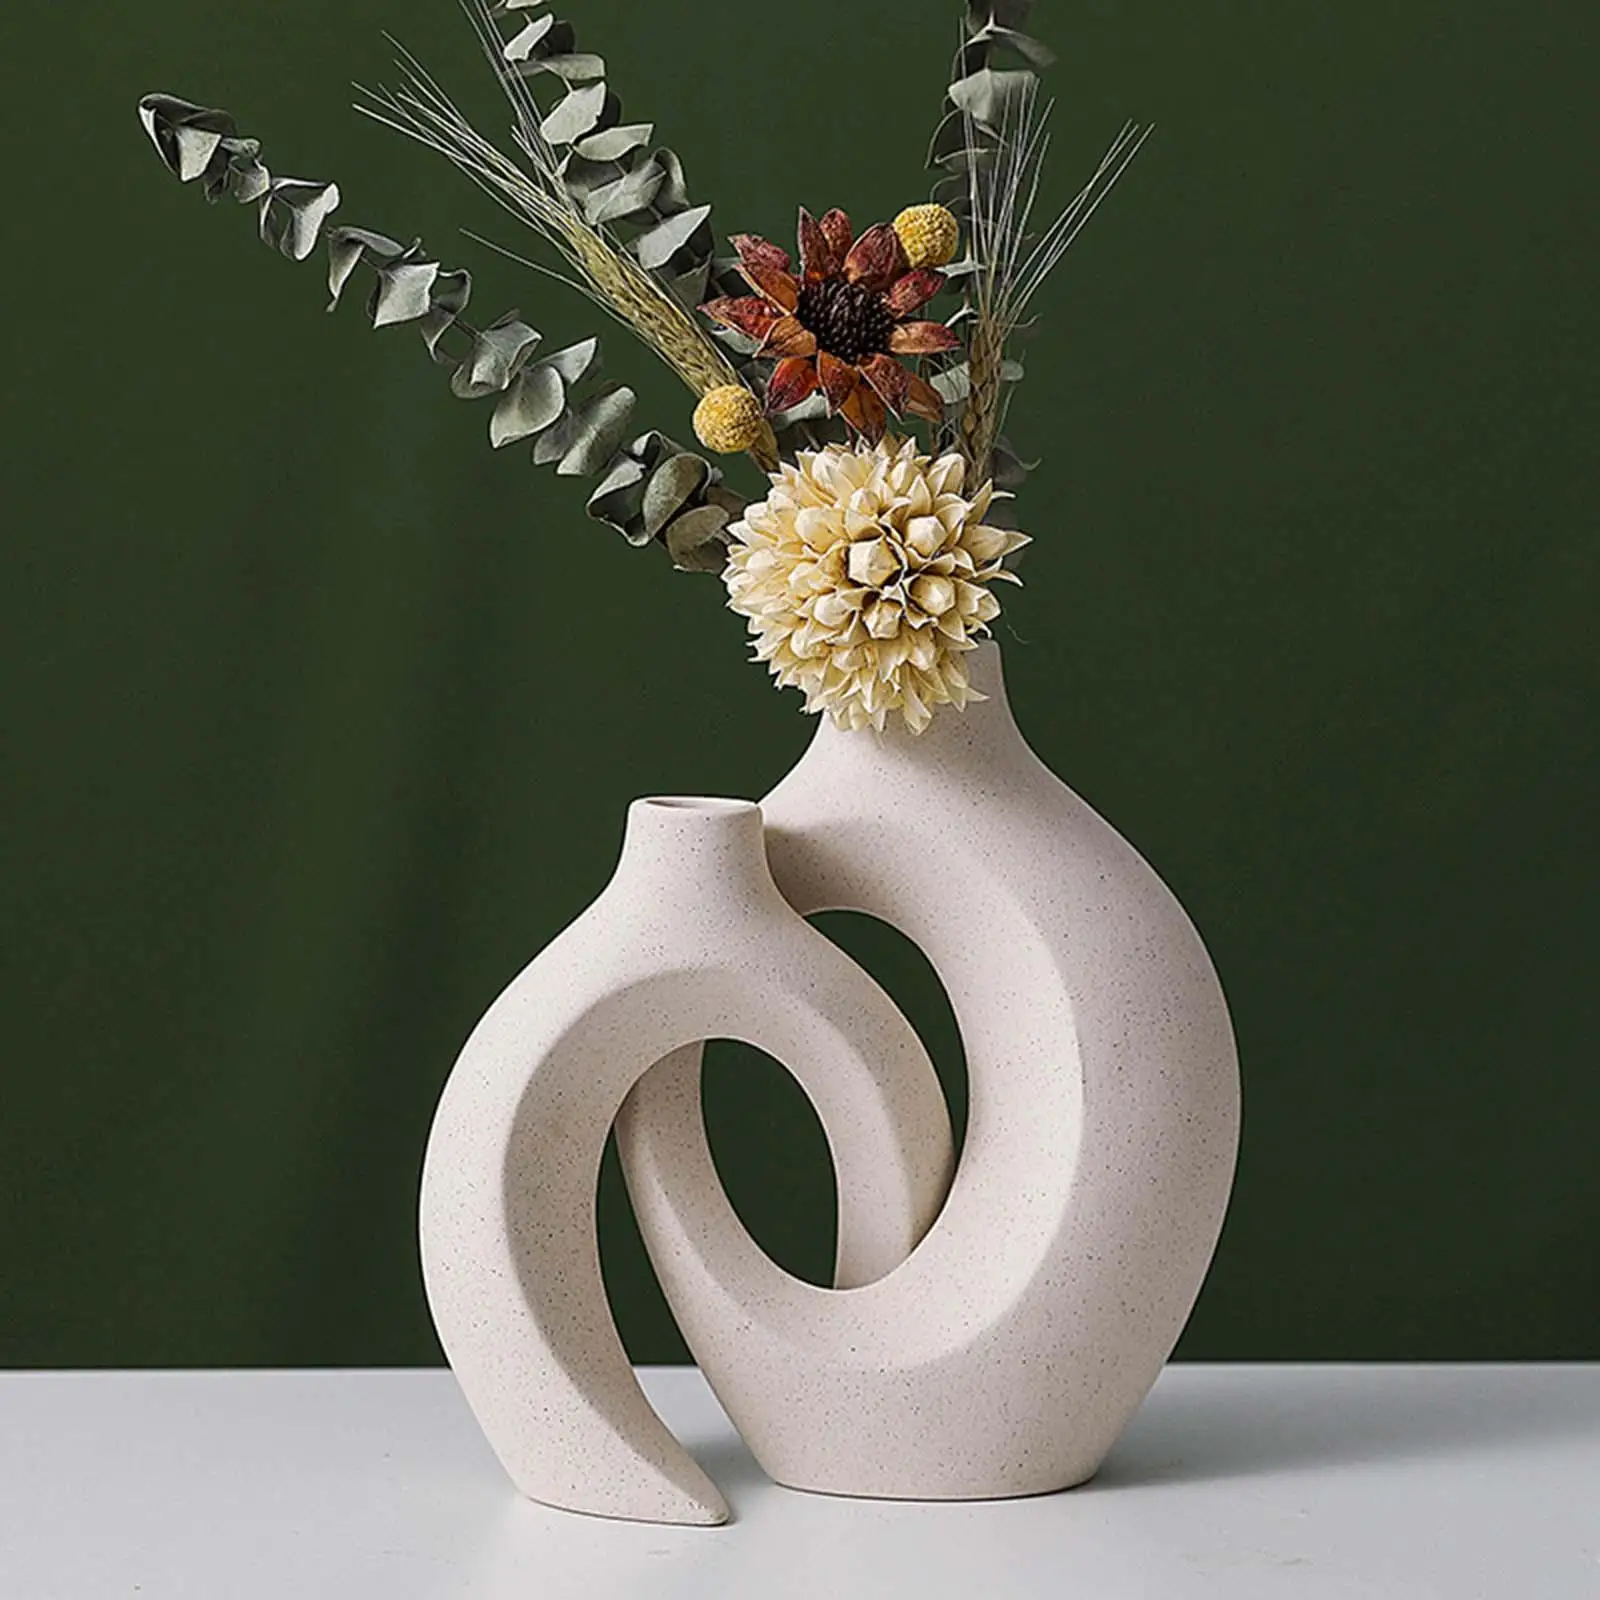 2 Pieces Nordic Style Flower Vase Flower Arrangements Planter Pots Tabletop Centerpieces Statue Decorative Bud Vase for Entrance